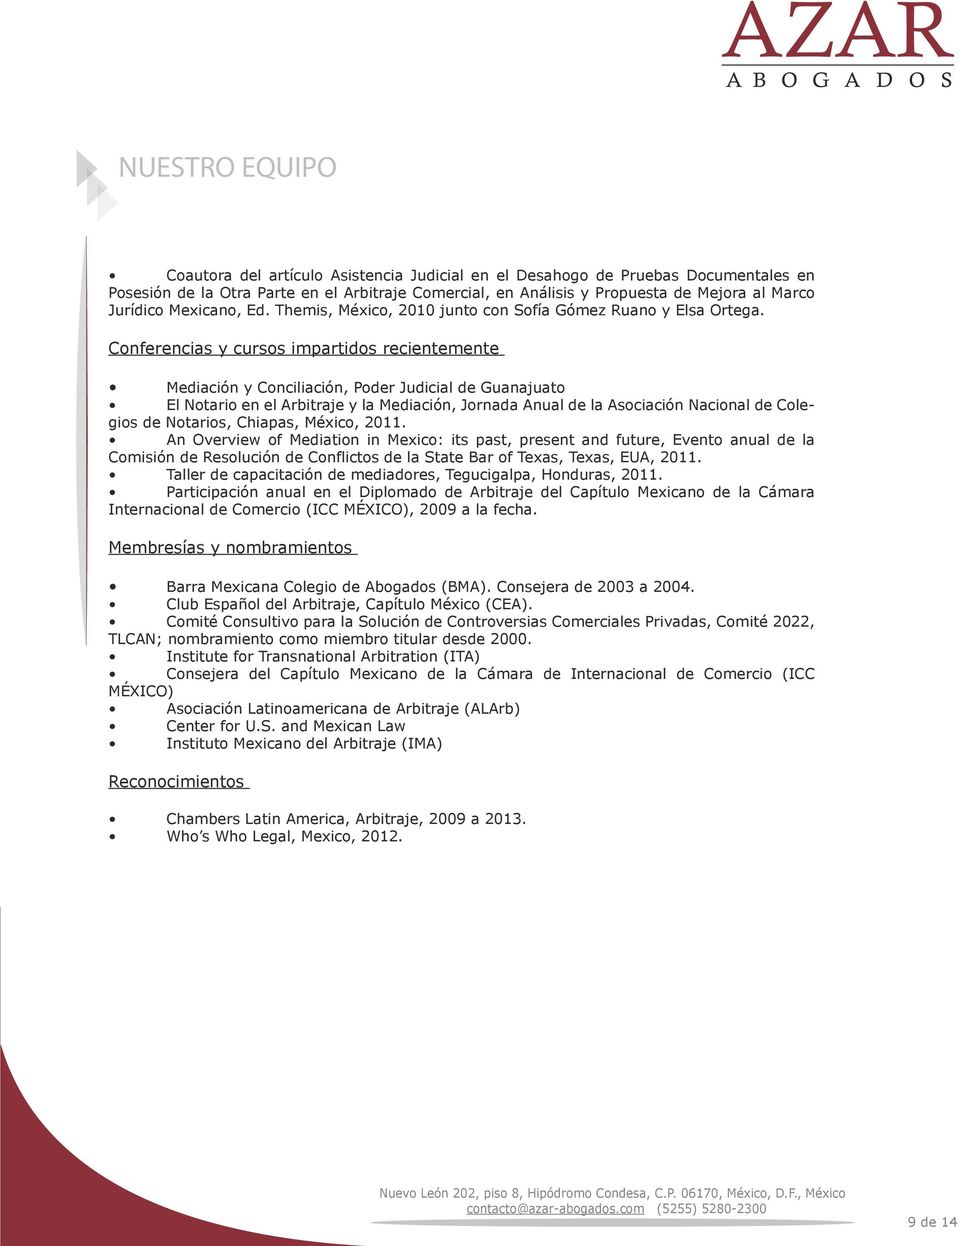 Conferencias y cursos impartidos recientemente Mediación y Conciliación, Poder Judicial de Guanajuato El Notario en el Arbitraje y la Mediación, Jornada Anual de la Asociación Nacional de Colegios de